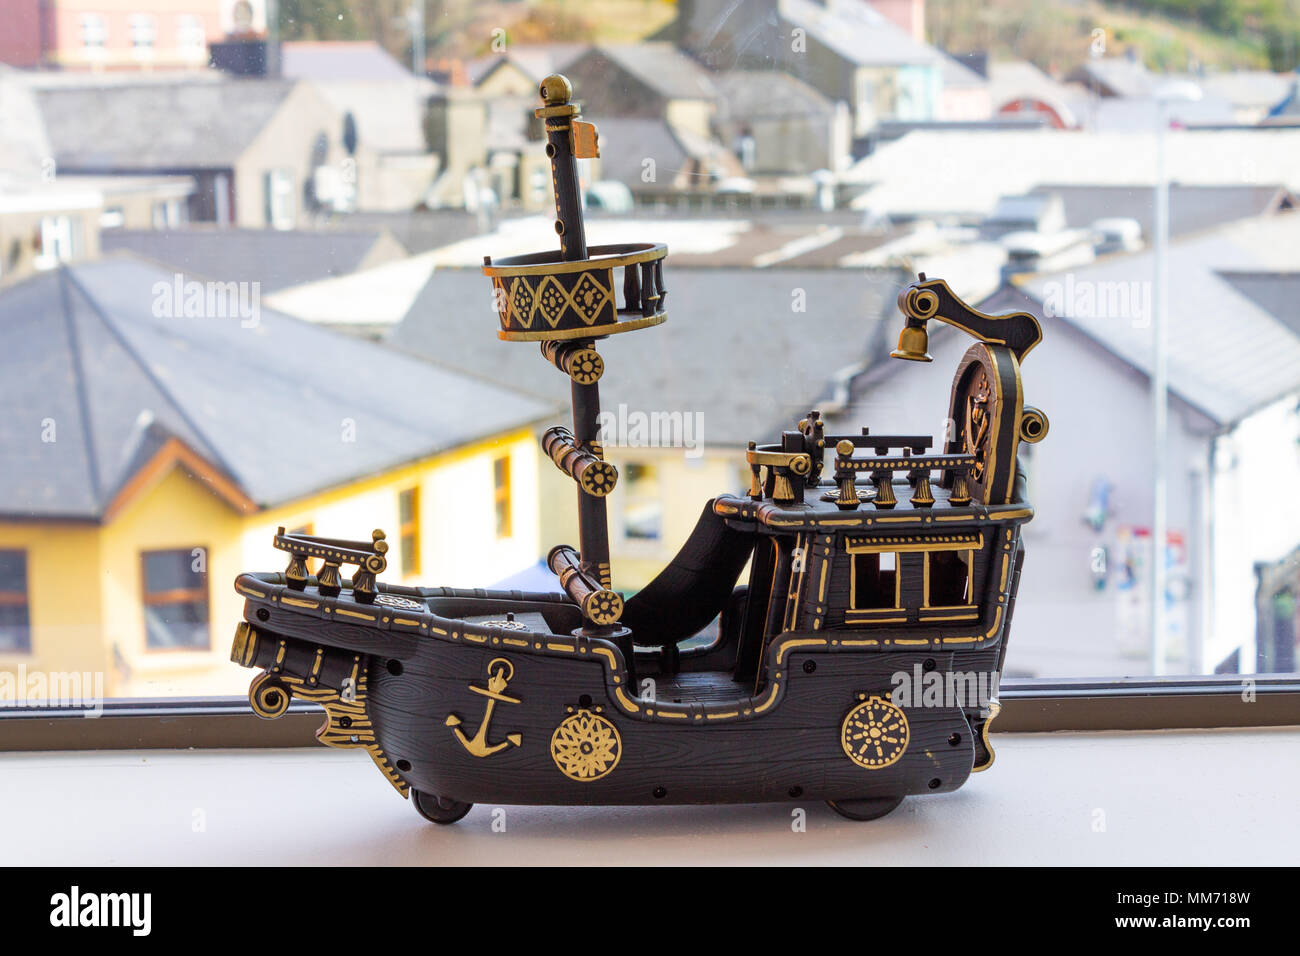 Spielzeug Modell eines einzigen mast Boot in Braun und Gold Farben bemalt, auf der Fensterbank als Fensterdekoration. Stockfoto